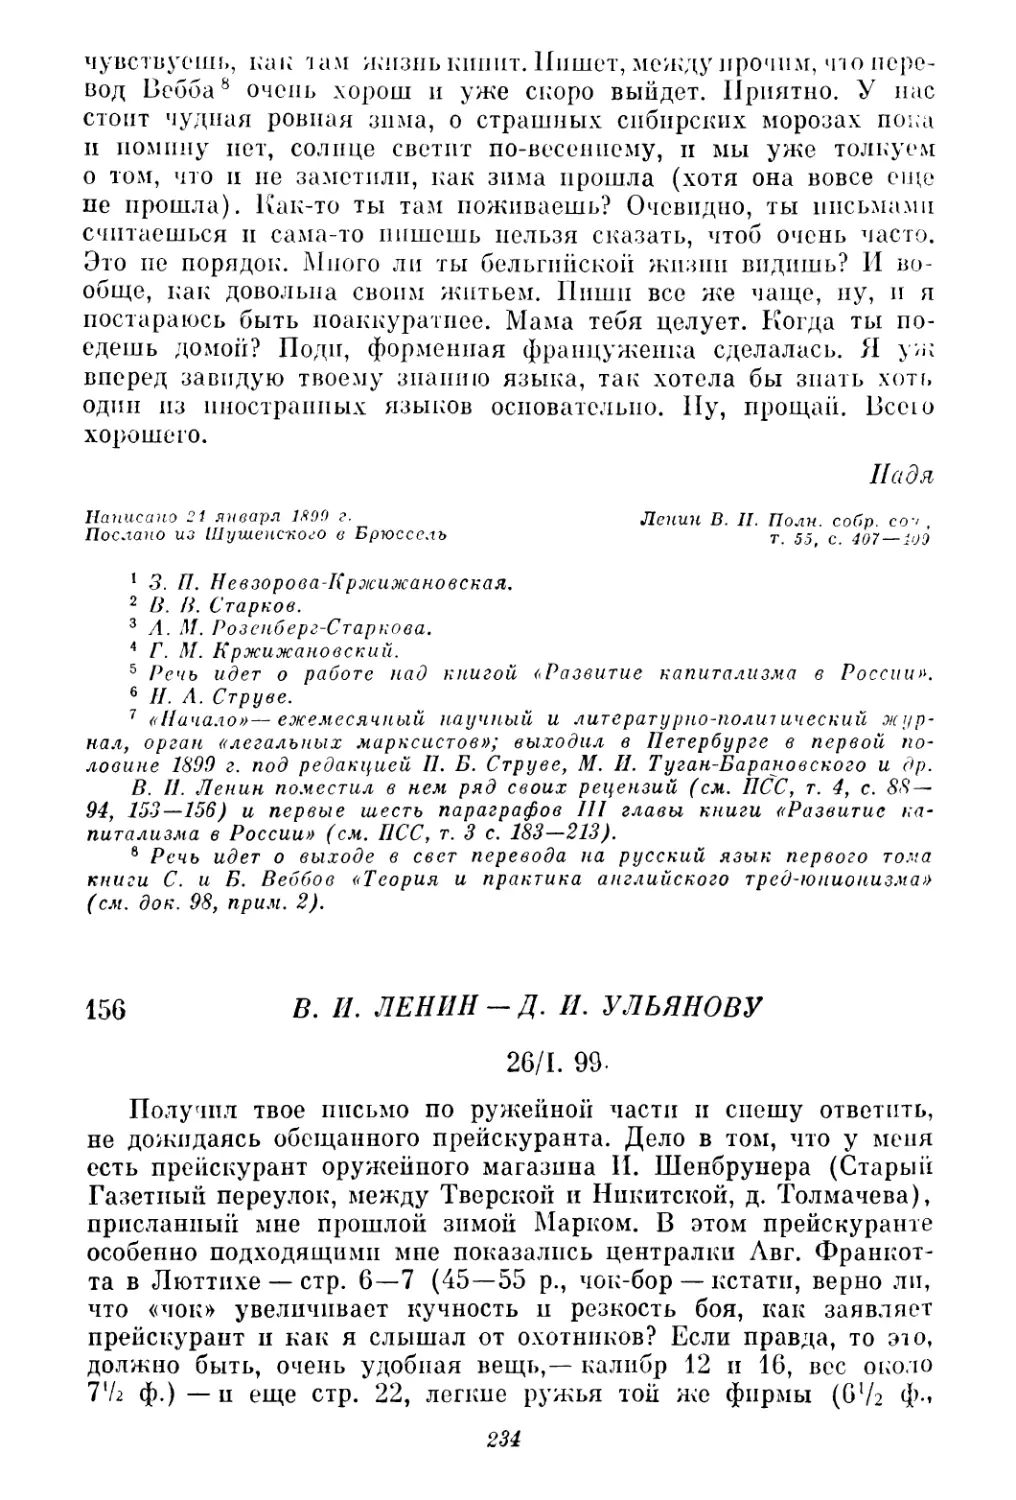 156. В. И. Ленин — Д. И. Ульянову. 26 января